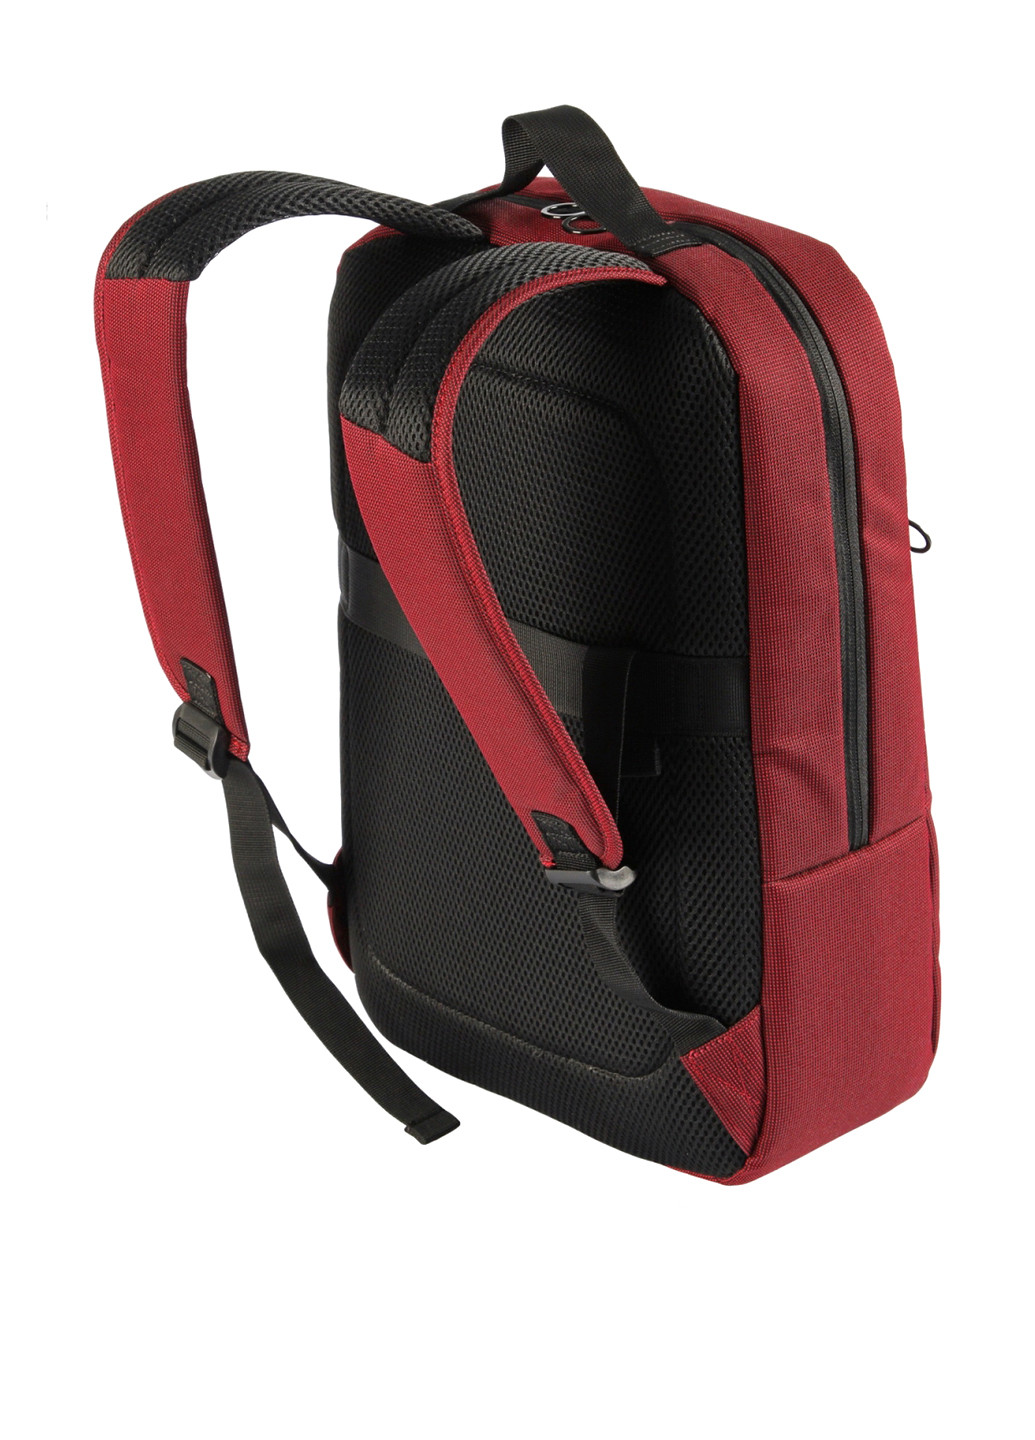 Рюкзак для ноутбука Loop Backpack 15.6", (бургунди) Tucano BKLOOP15-BX бордовая